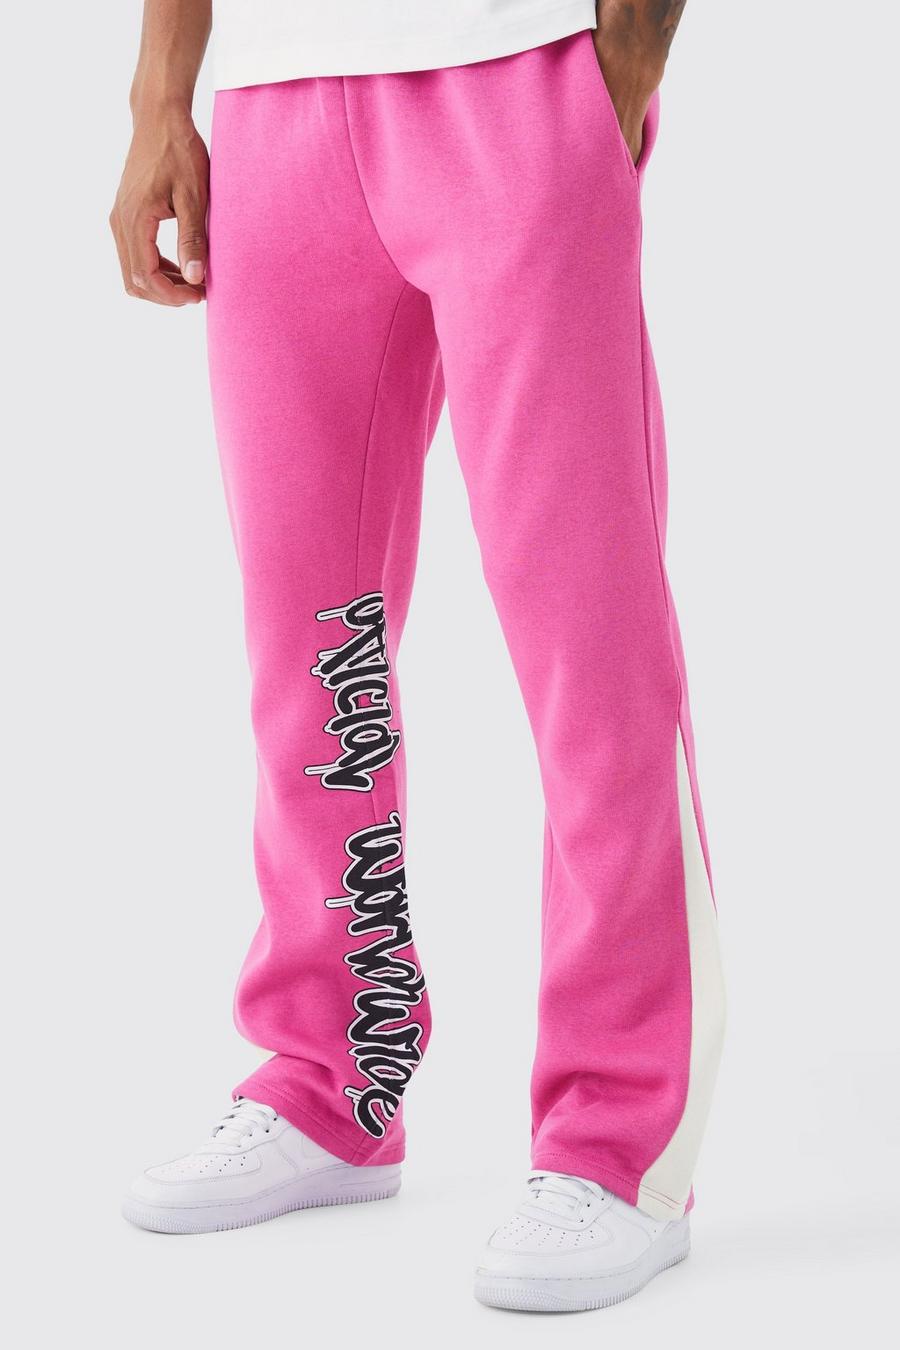 Pantaloni tuta Tall con stampa stile Graffiti, inserti e pannelli, Pink